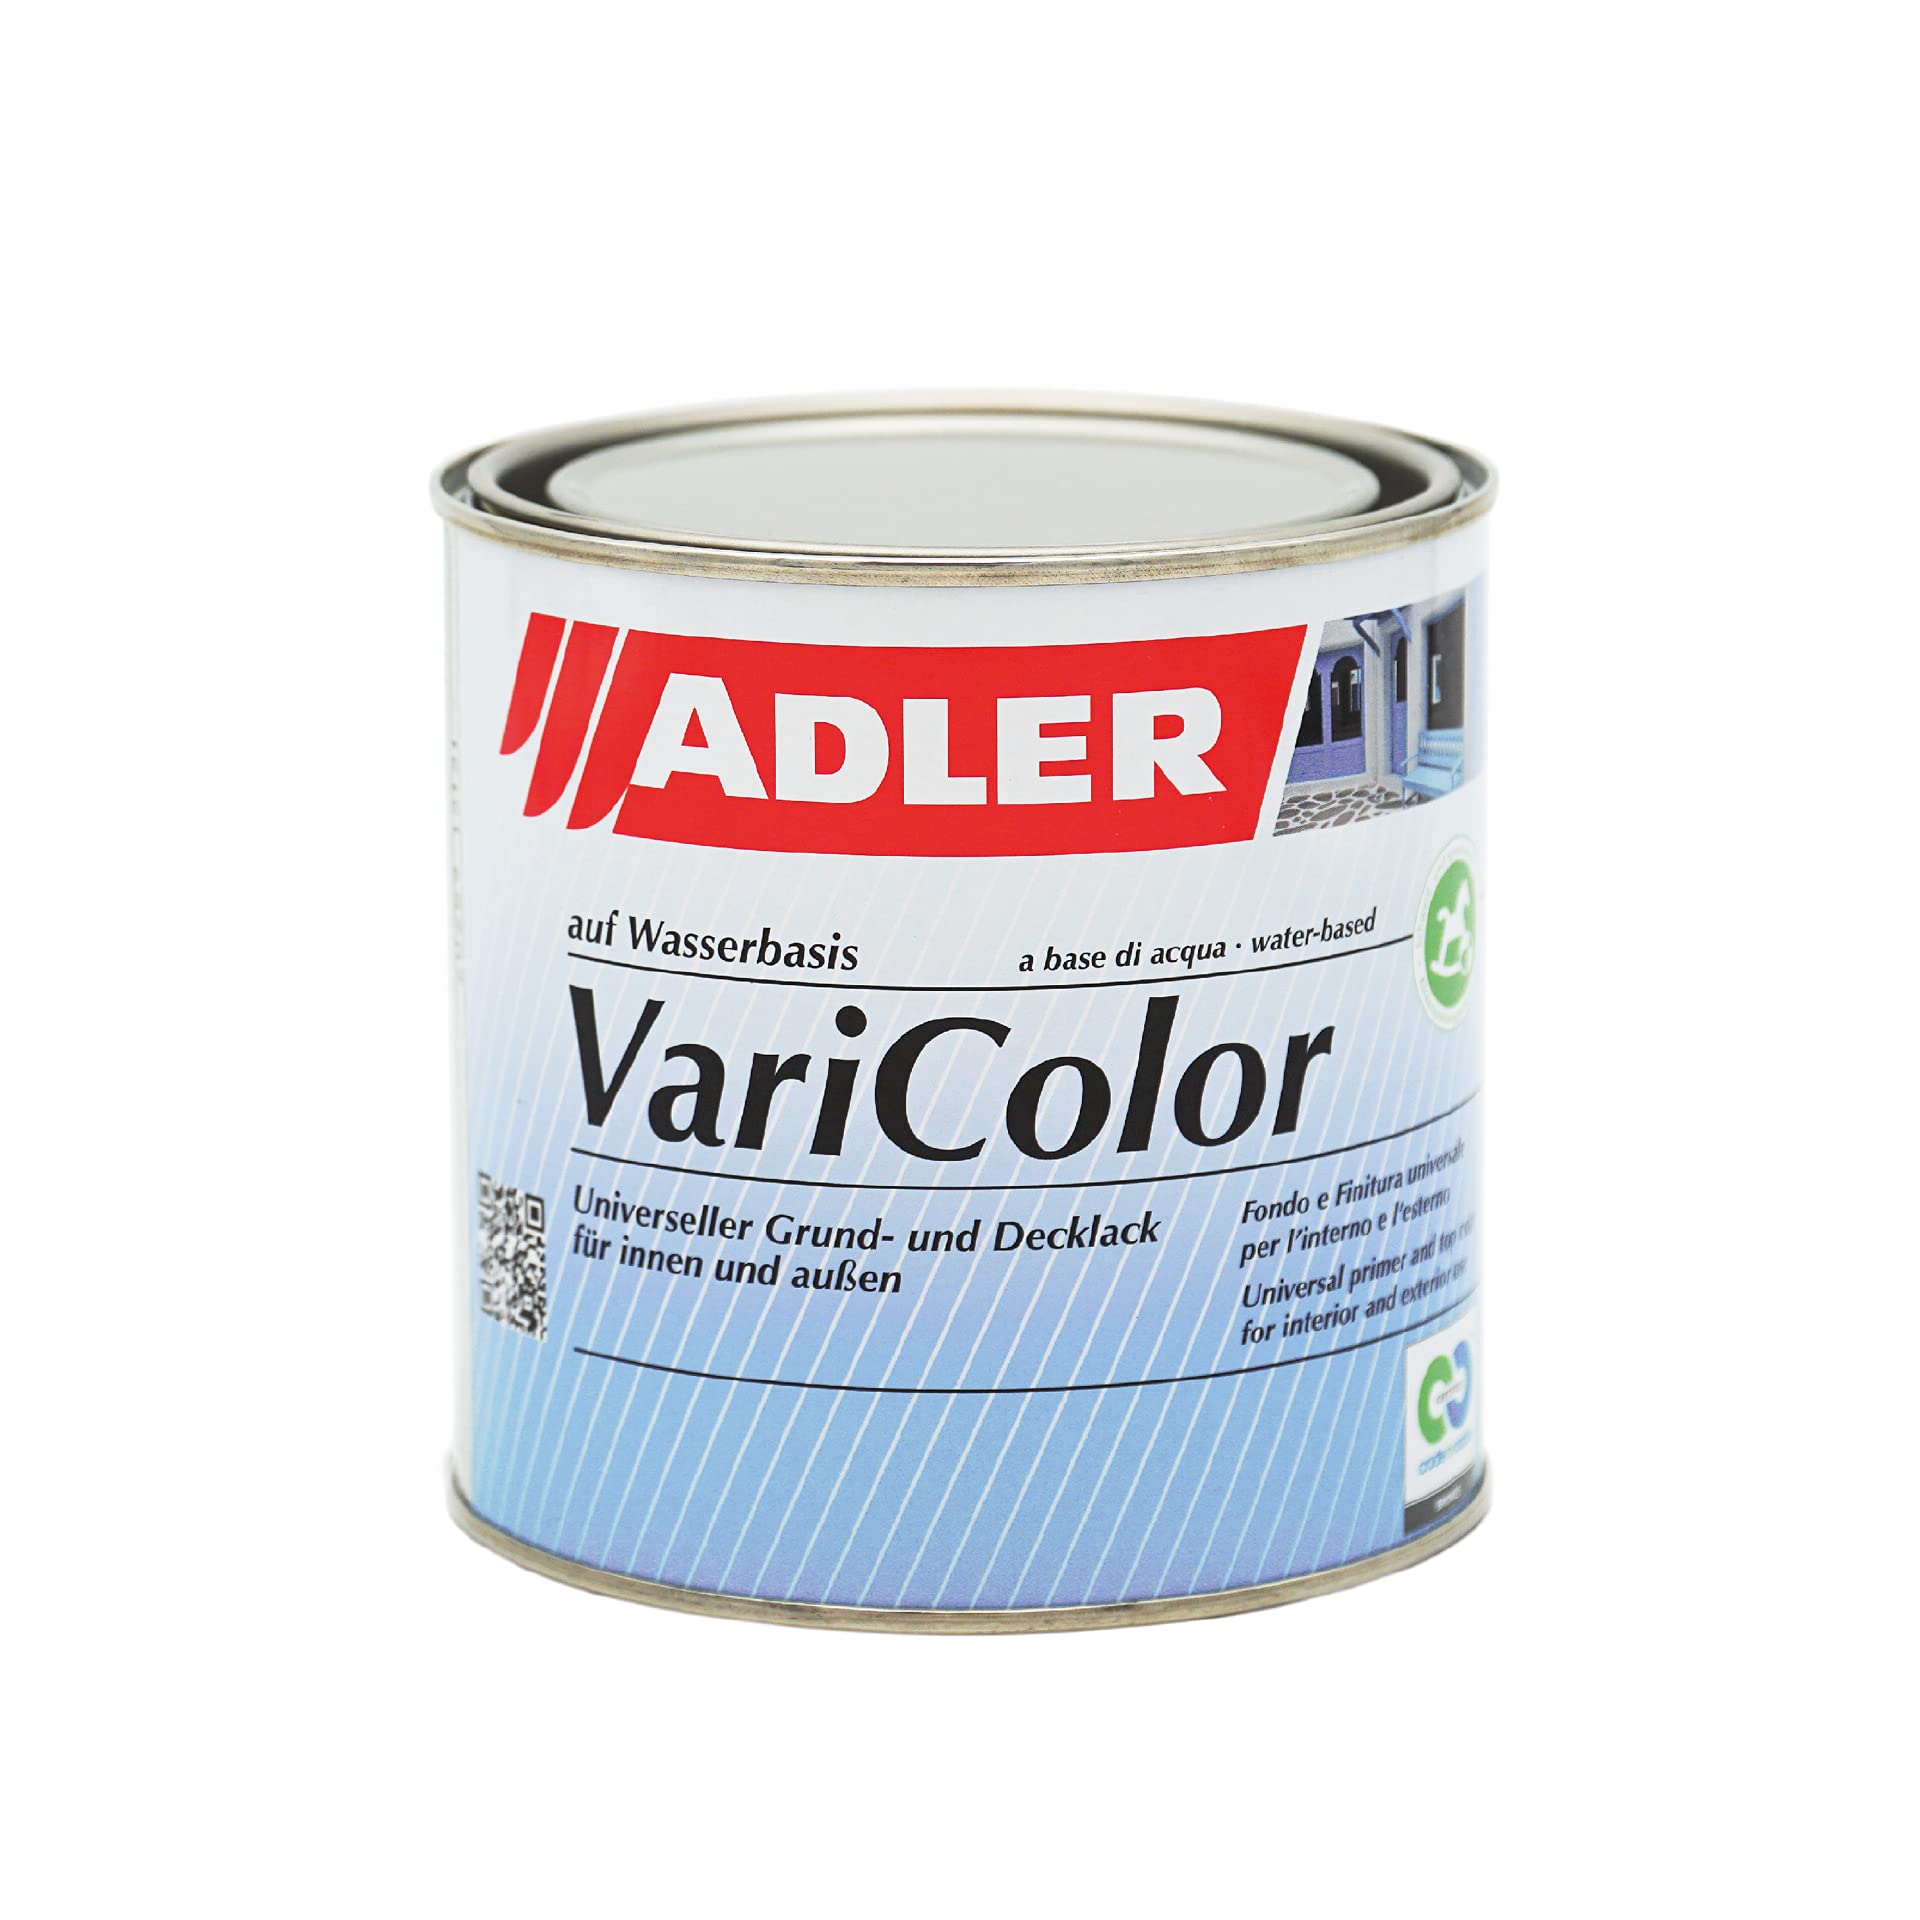 ADLER Varicolor 2in1 Acryl Buntlack für Innen und Außen - 750 ml RAL5002 Ultramarineblau Blau - Wetterfester Lack und Grundierung - matt